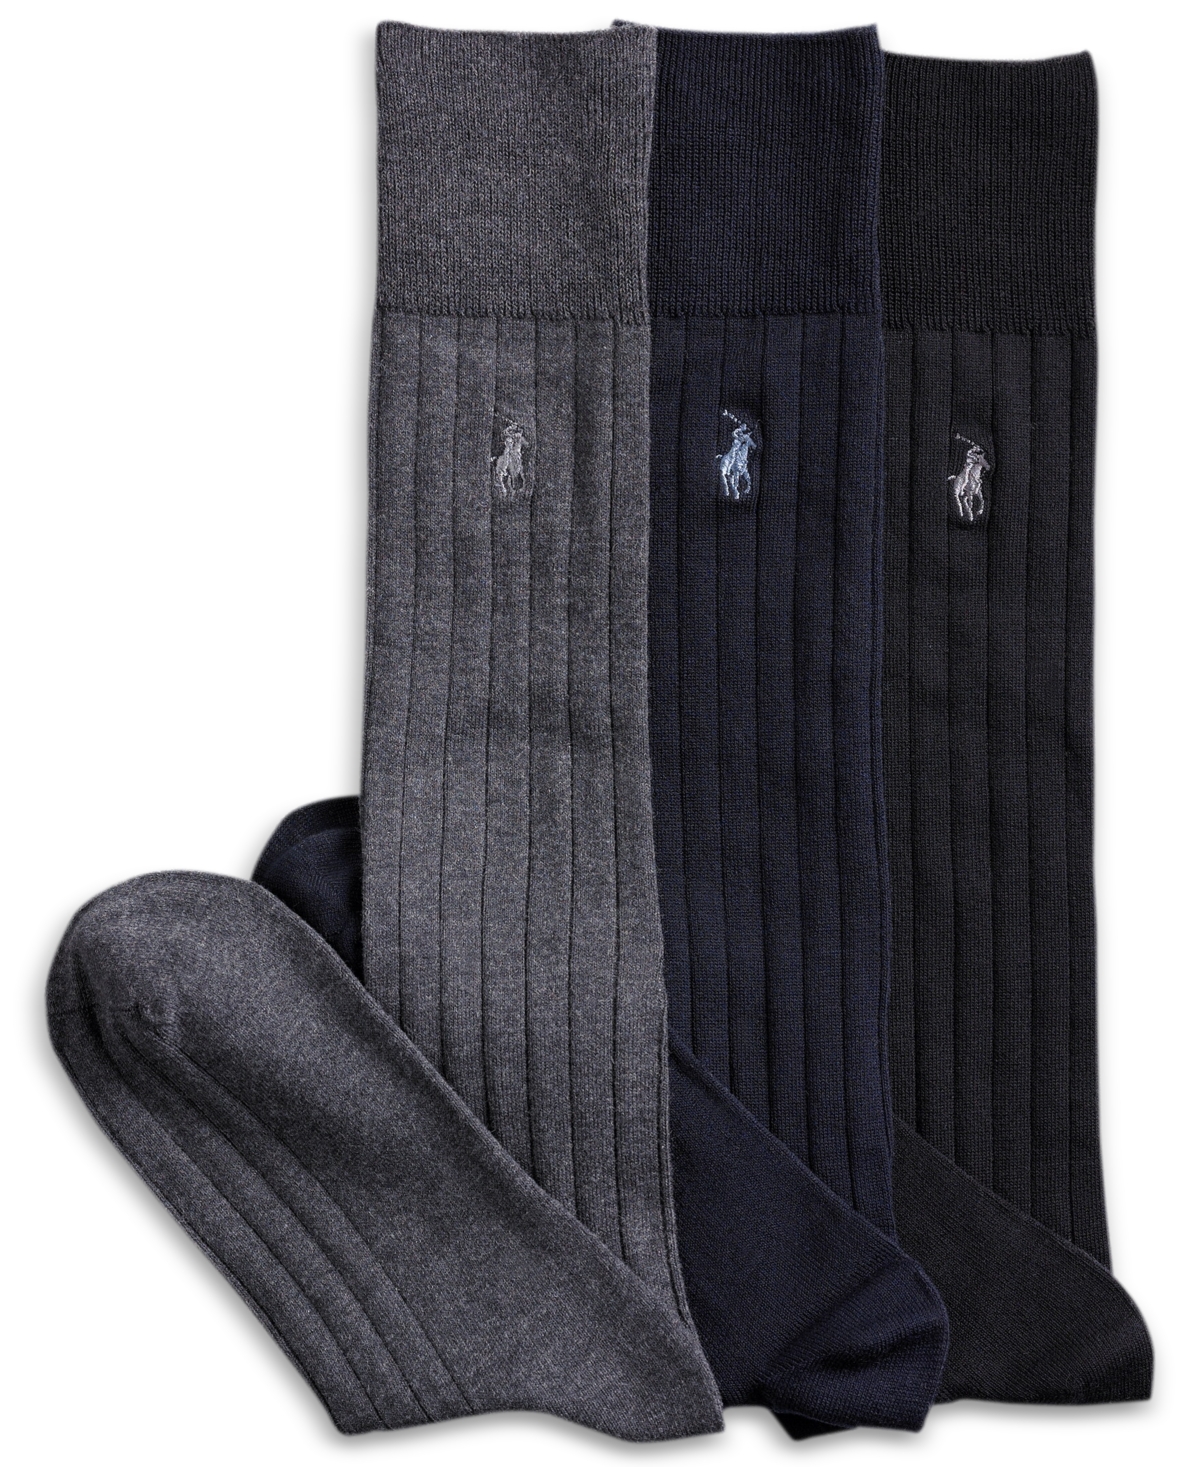 Polo Ralph Lauren 3 Pack Over The Calf Dress Men's Socks In Black,charcoal,navy